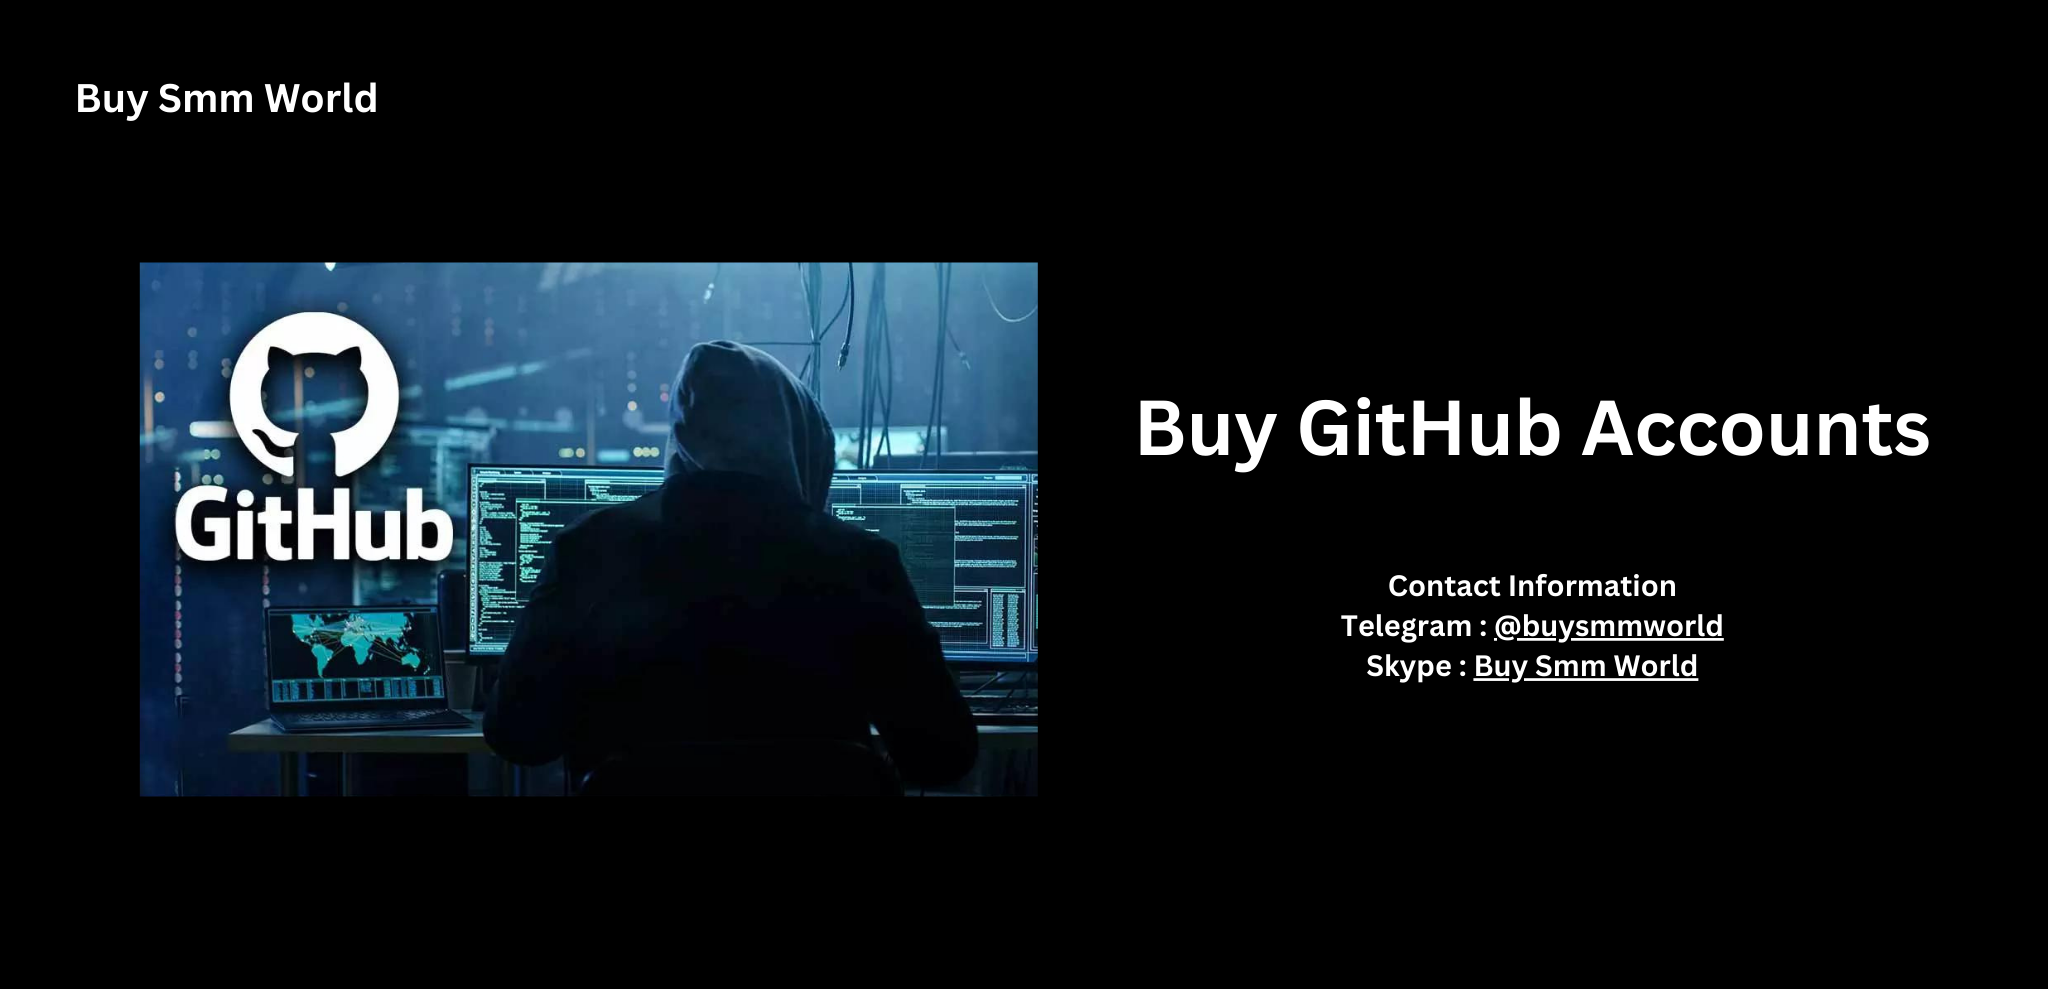 Buy GitHub Accounts
